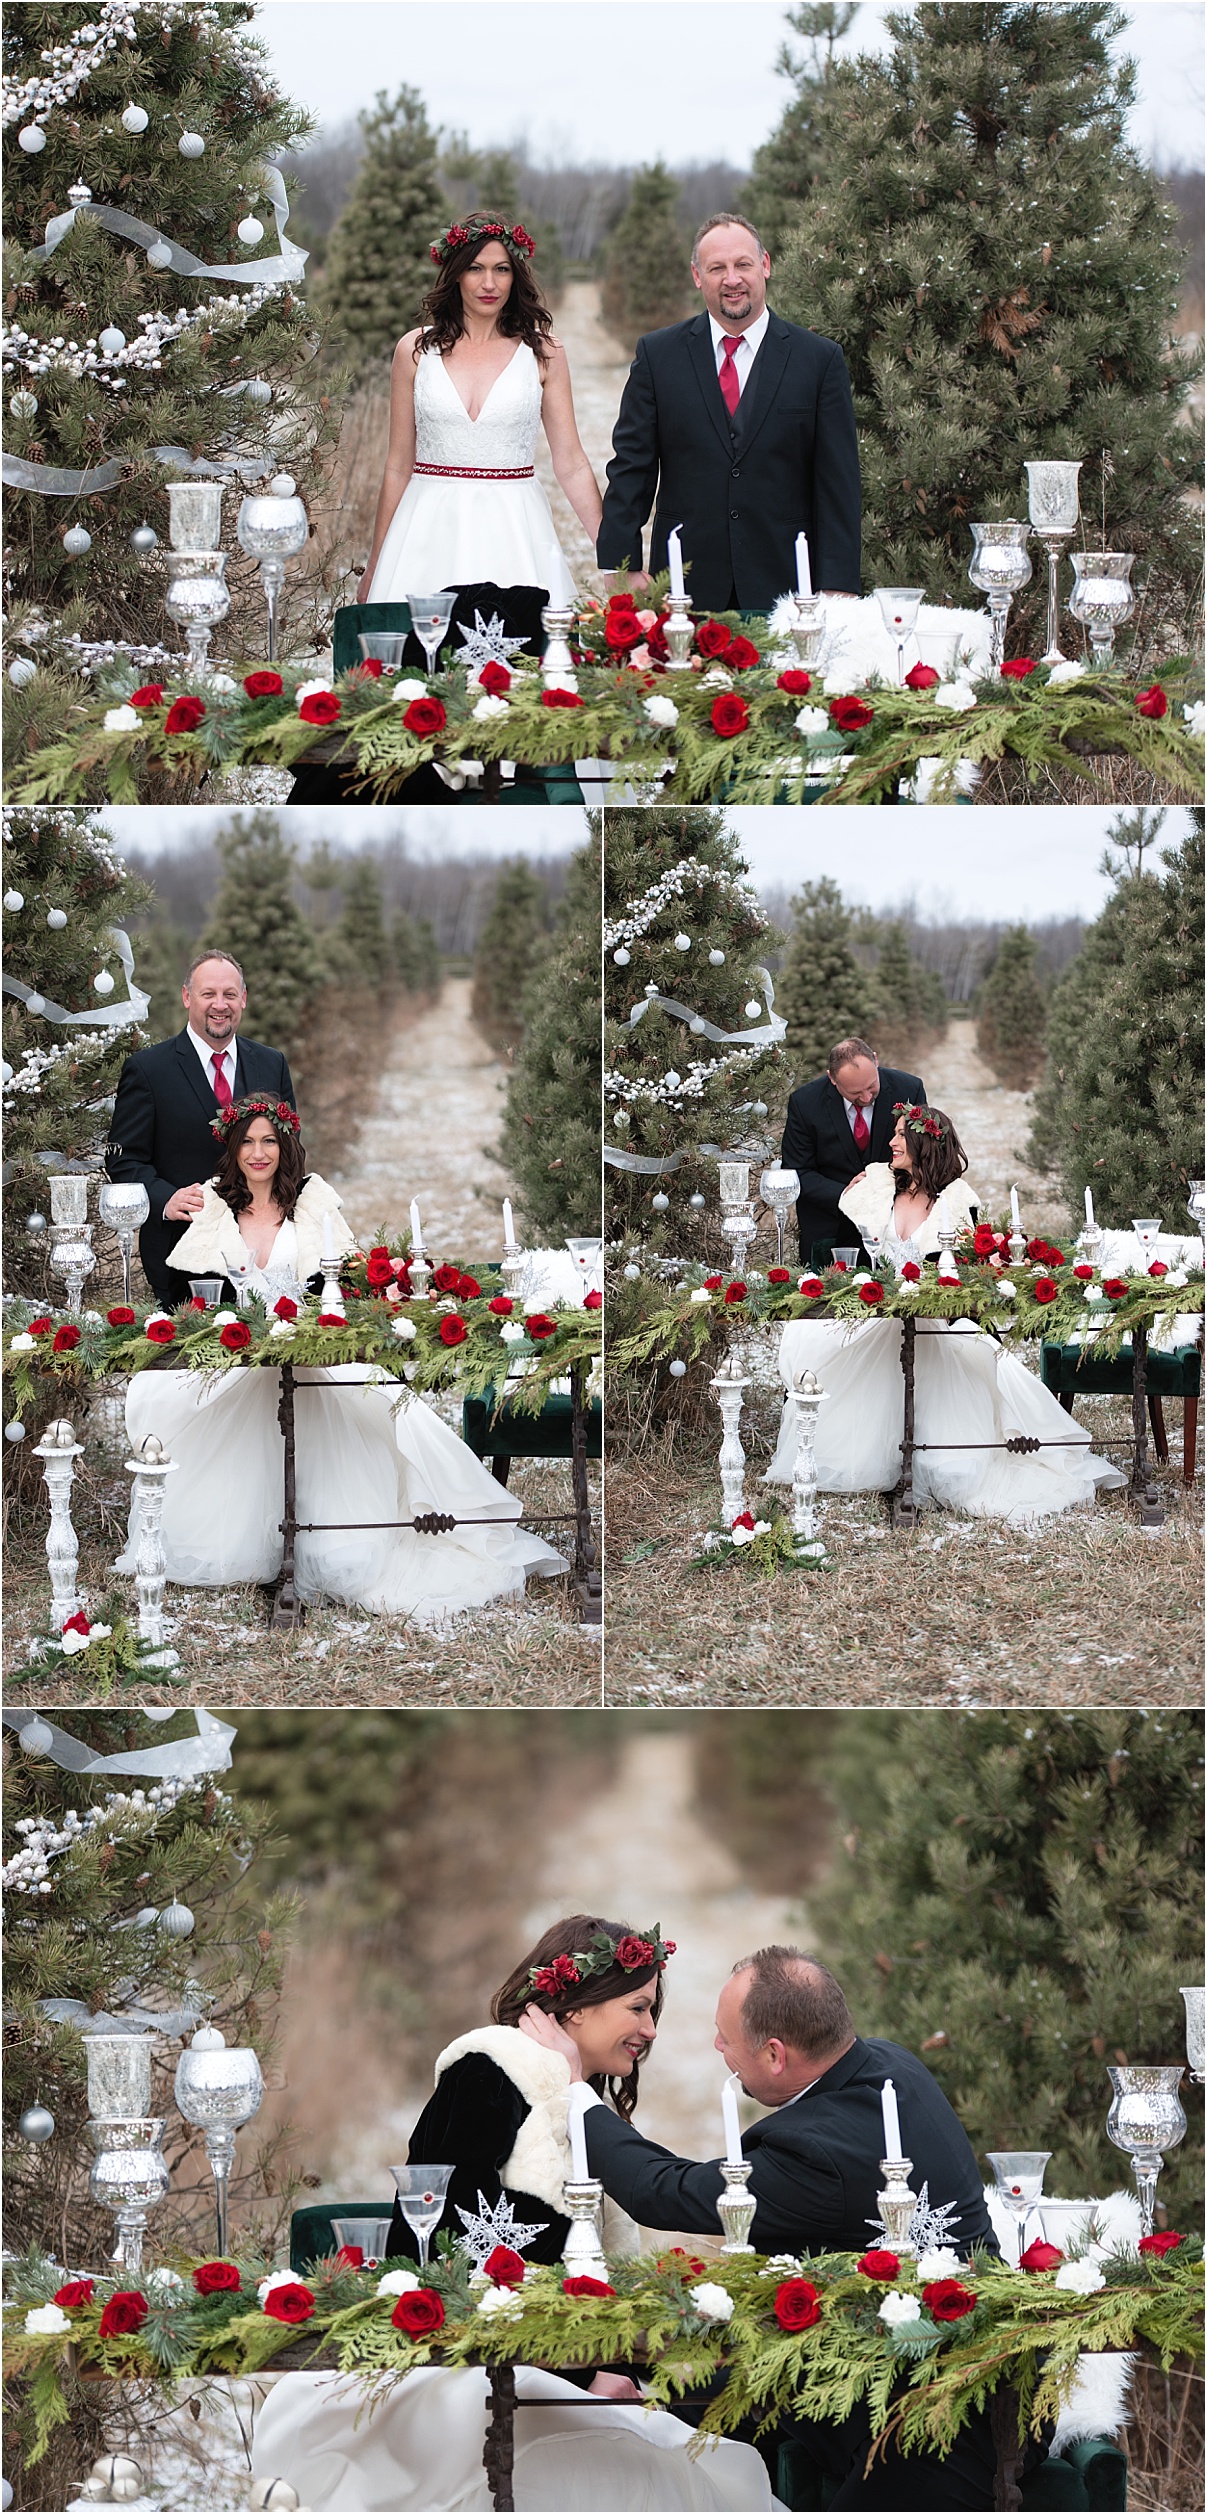 Styled shoot, Ottawa wedding photographer, Ottawa wedding vendors, Santa baby, styled wedding, wedding inspiration